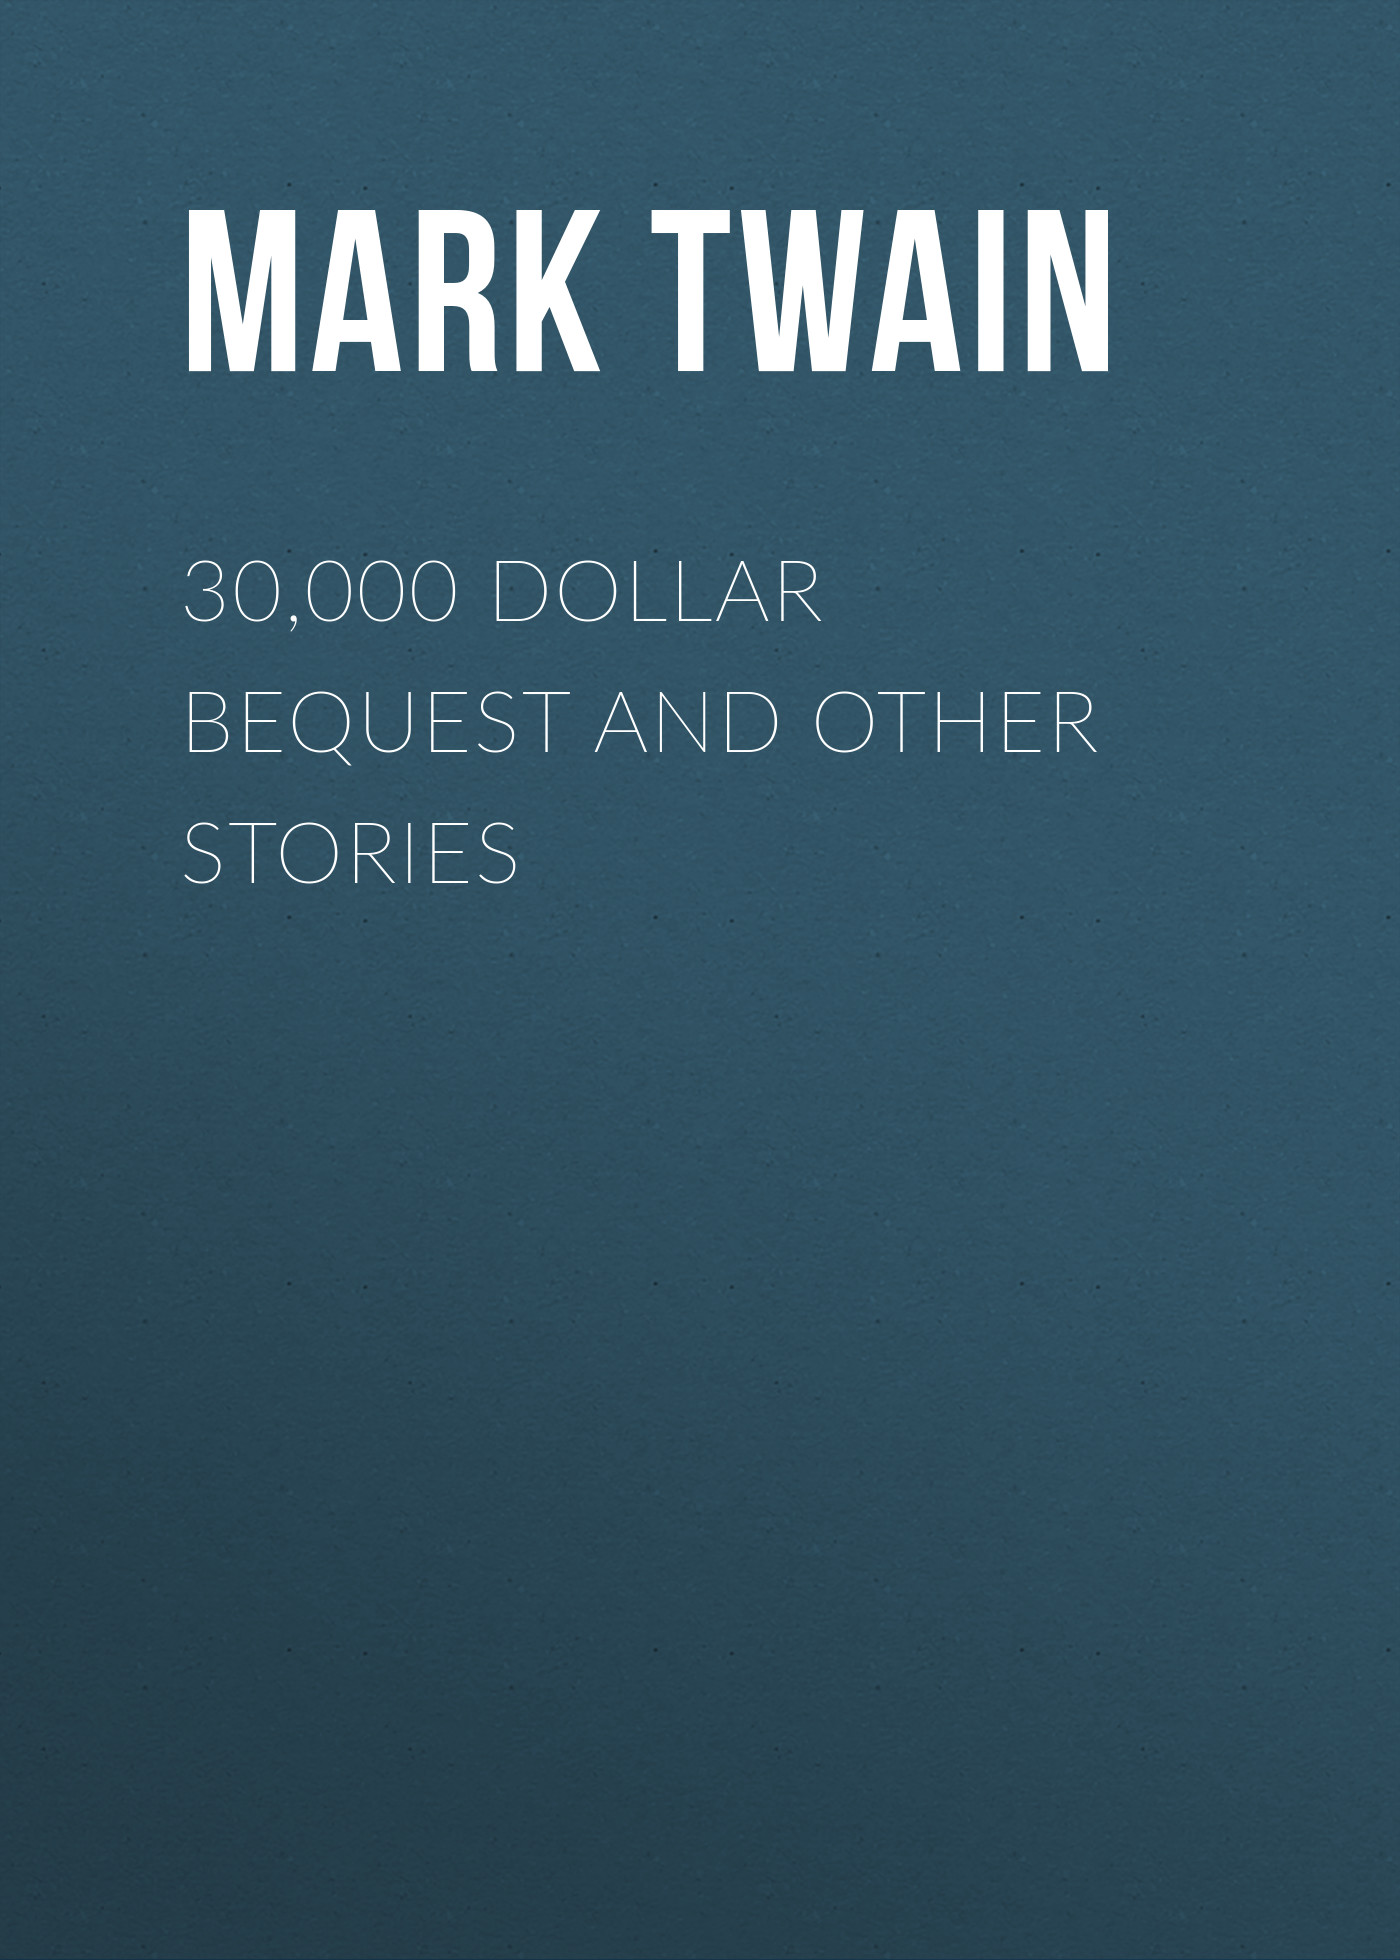 Книга 30,000 Dollar Bequest and Other Stories из серии , созданная Марк Твен, может относится к жанру Зарубежная классика. Стоимость электронной книги 30,000 Dollar Bequest and Other Stories с идентификатором 9366924 составляет 29.95 руб.